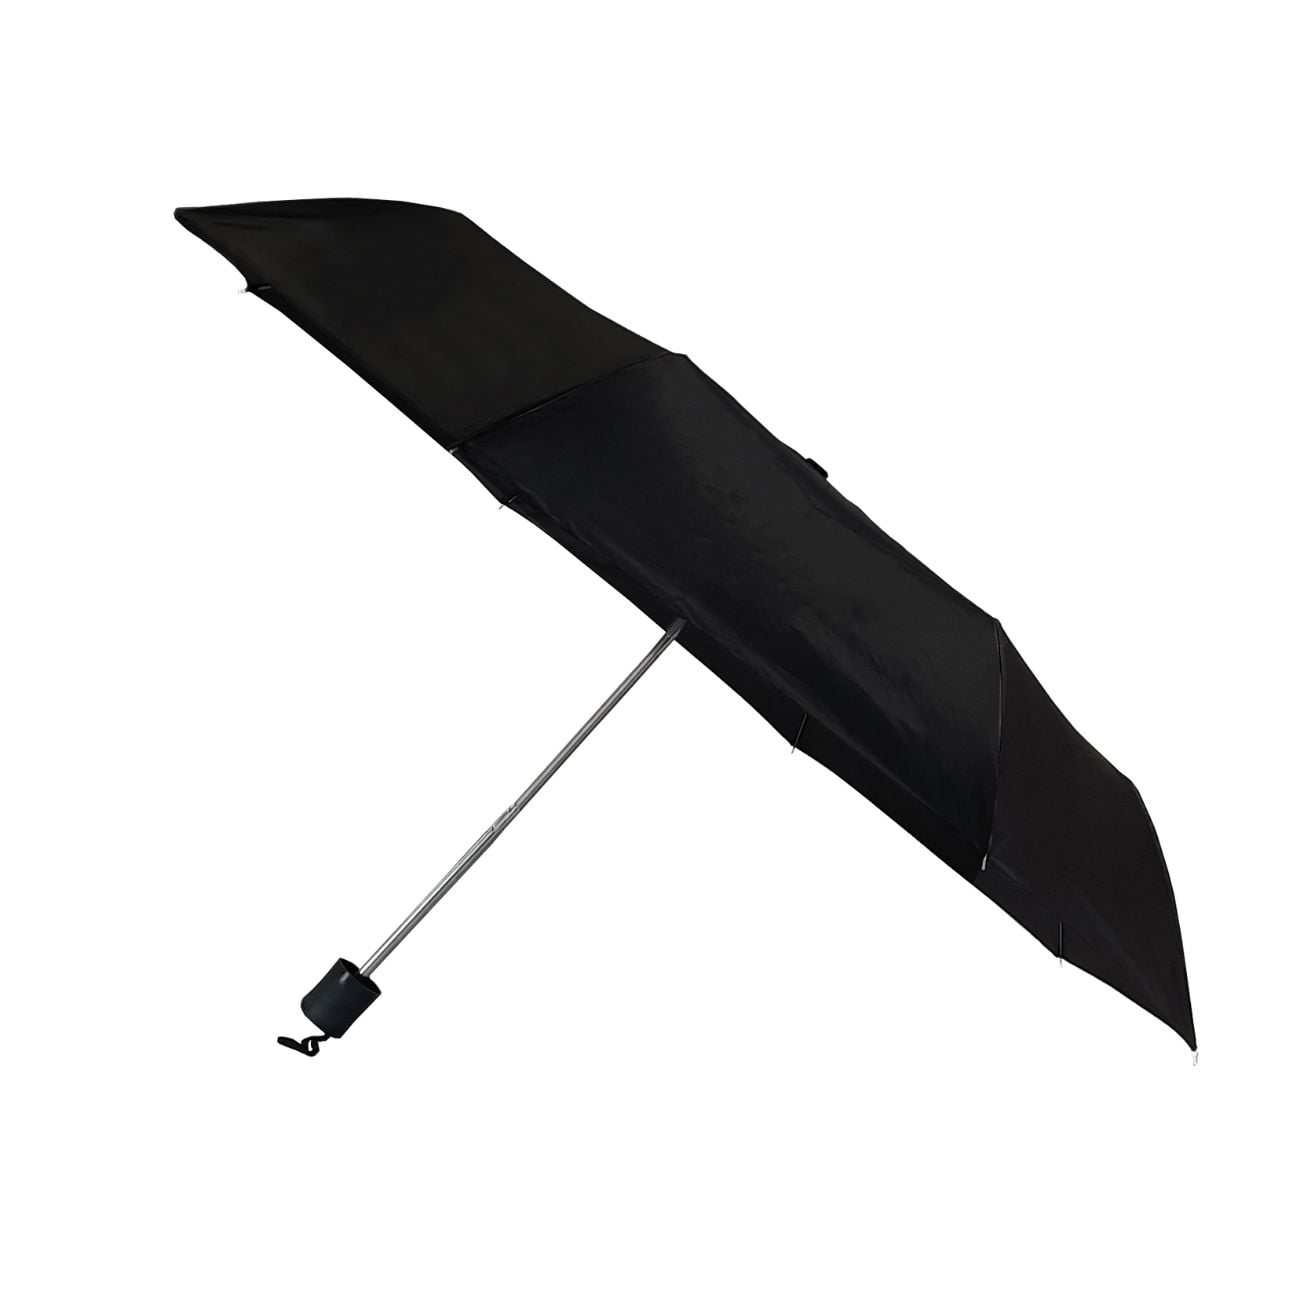 Black Budget compact umbrella